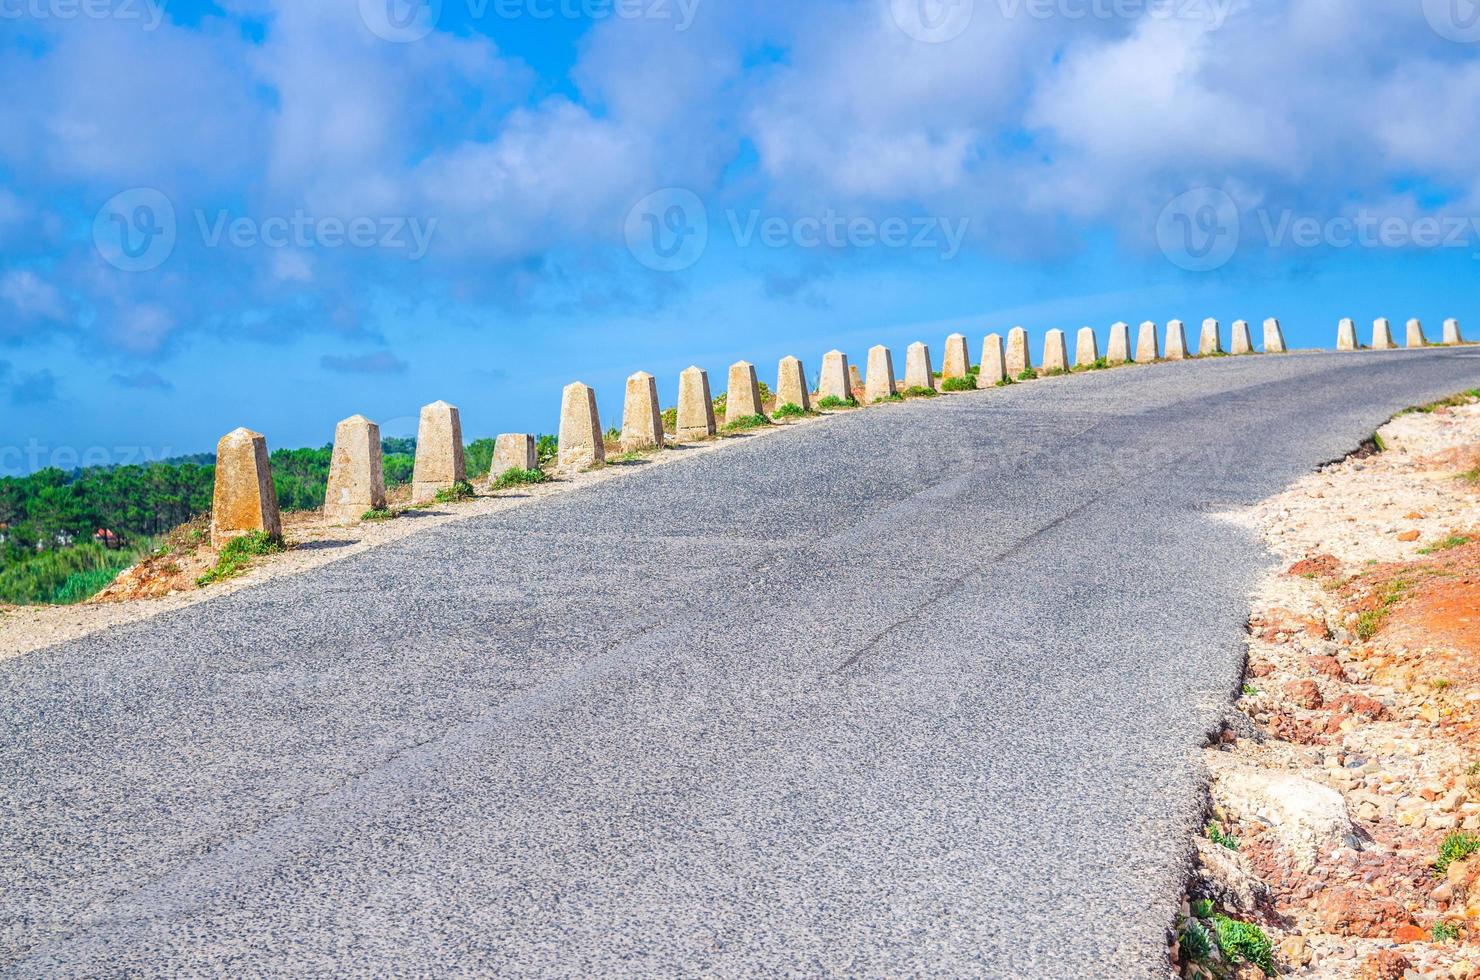 asfaltweg met stenen bewaker barrière naar voren en naar rechts, blauwe lucht witte wolken foto